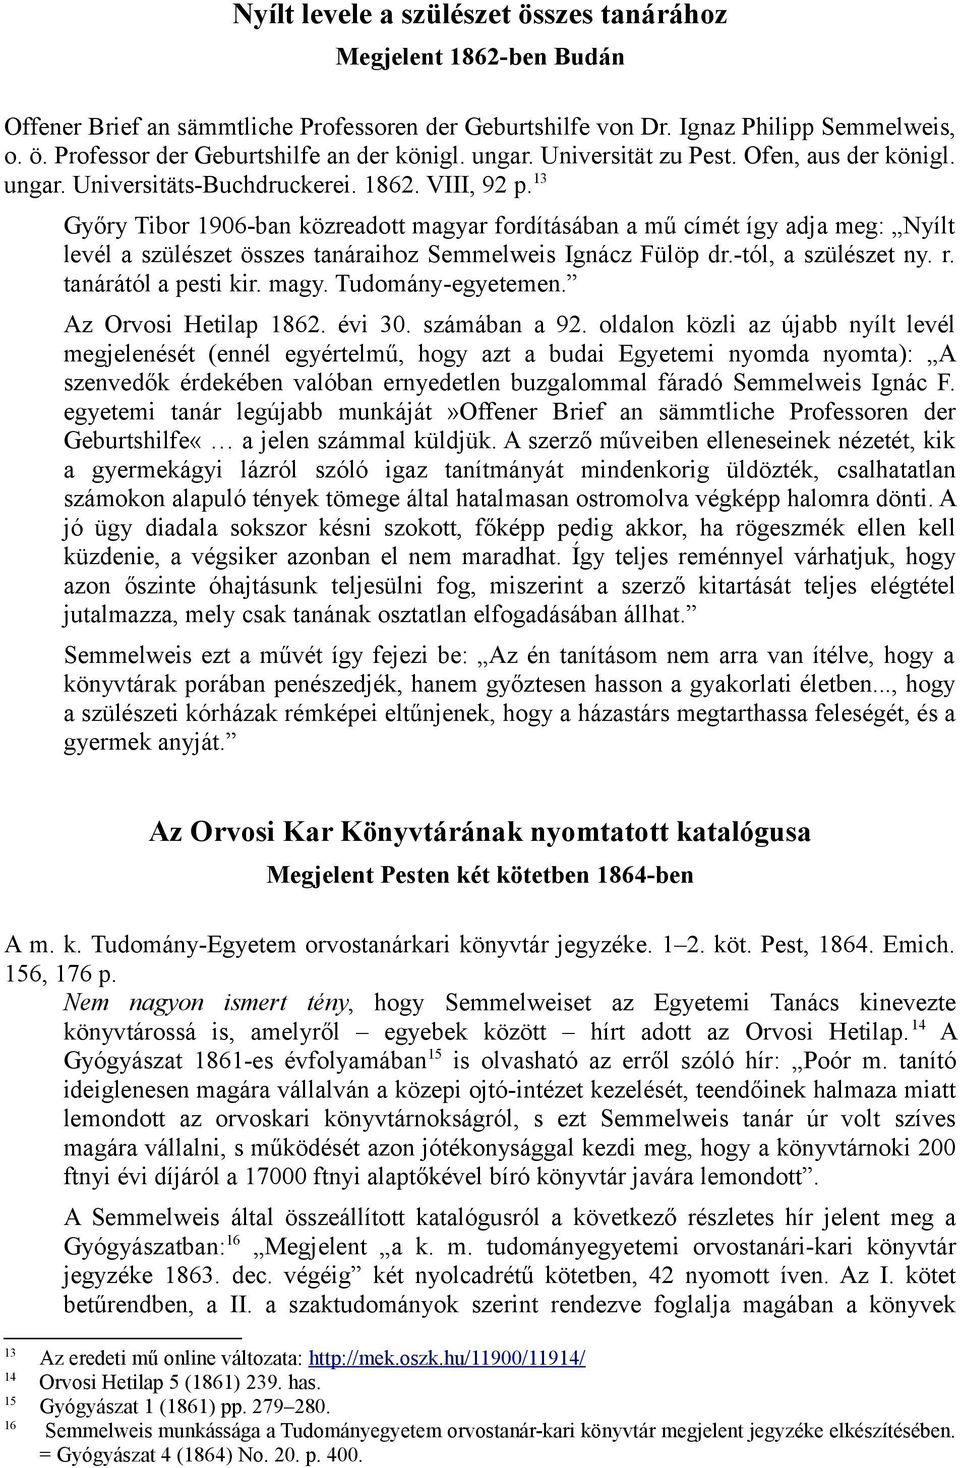 13 Győry Tibor 1906-ban közreadott magyar fordításában a mű címét így adja meg: Nyílt levél a szülészet összes tanáraihoz Semmelweis Ignácz Fülöp dr.-tól, a szülészet ny. r. tanárától a pesti kir.